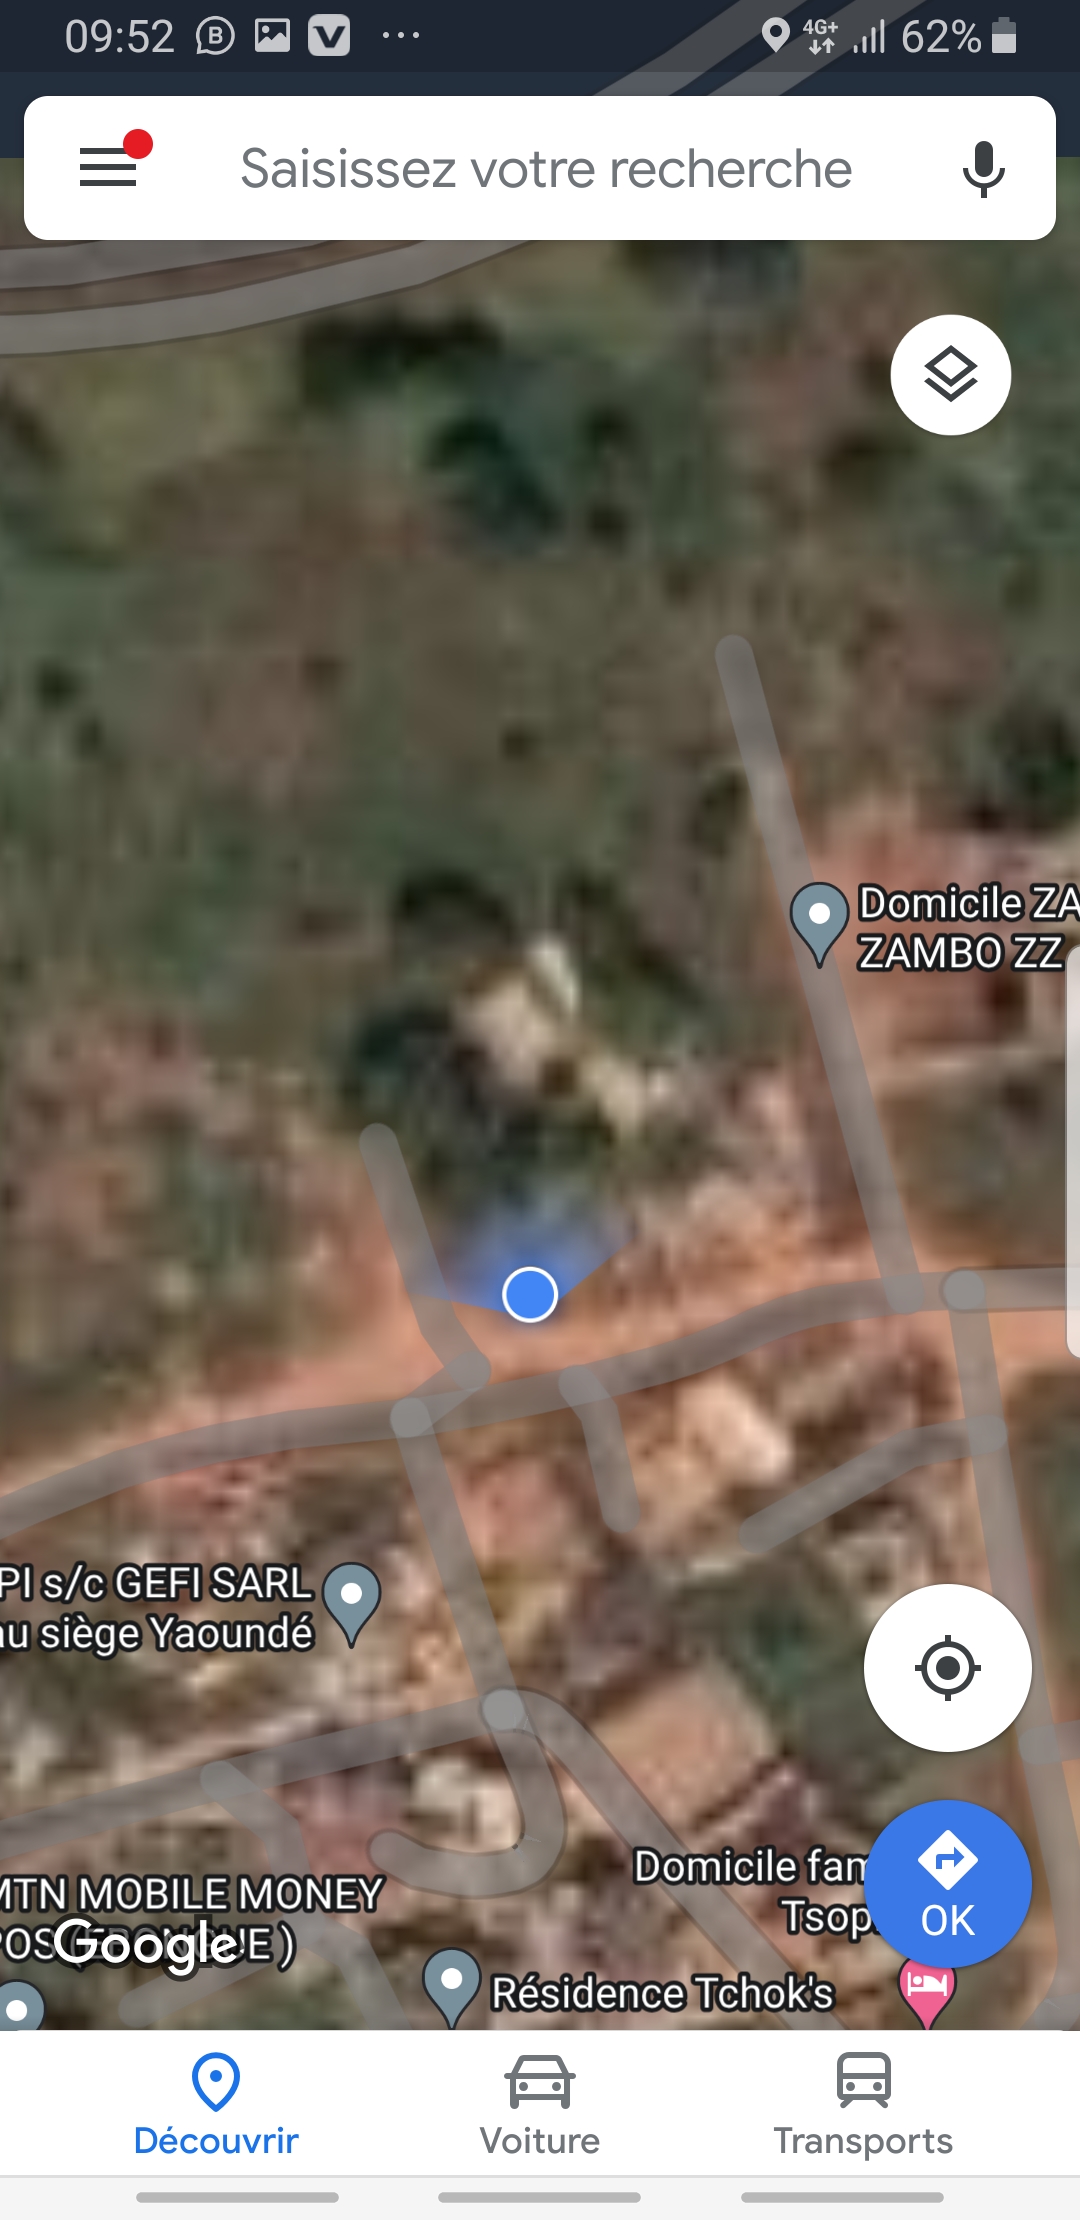 Land for sale at Yaoundé, Bastos, dragage - 500 m2 - 125 000 000 FCFA